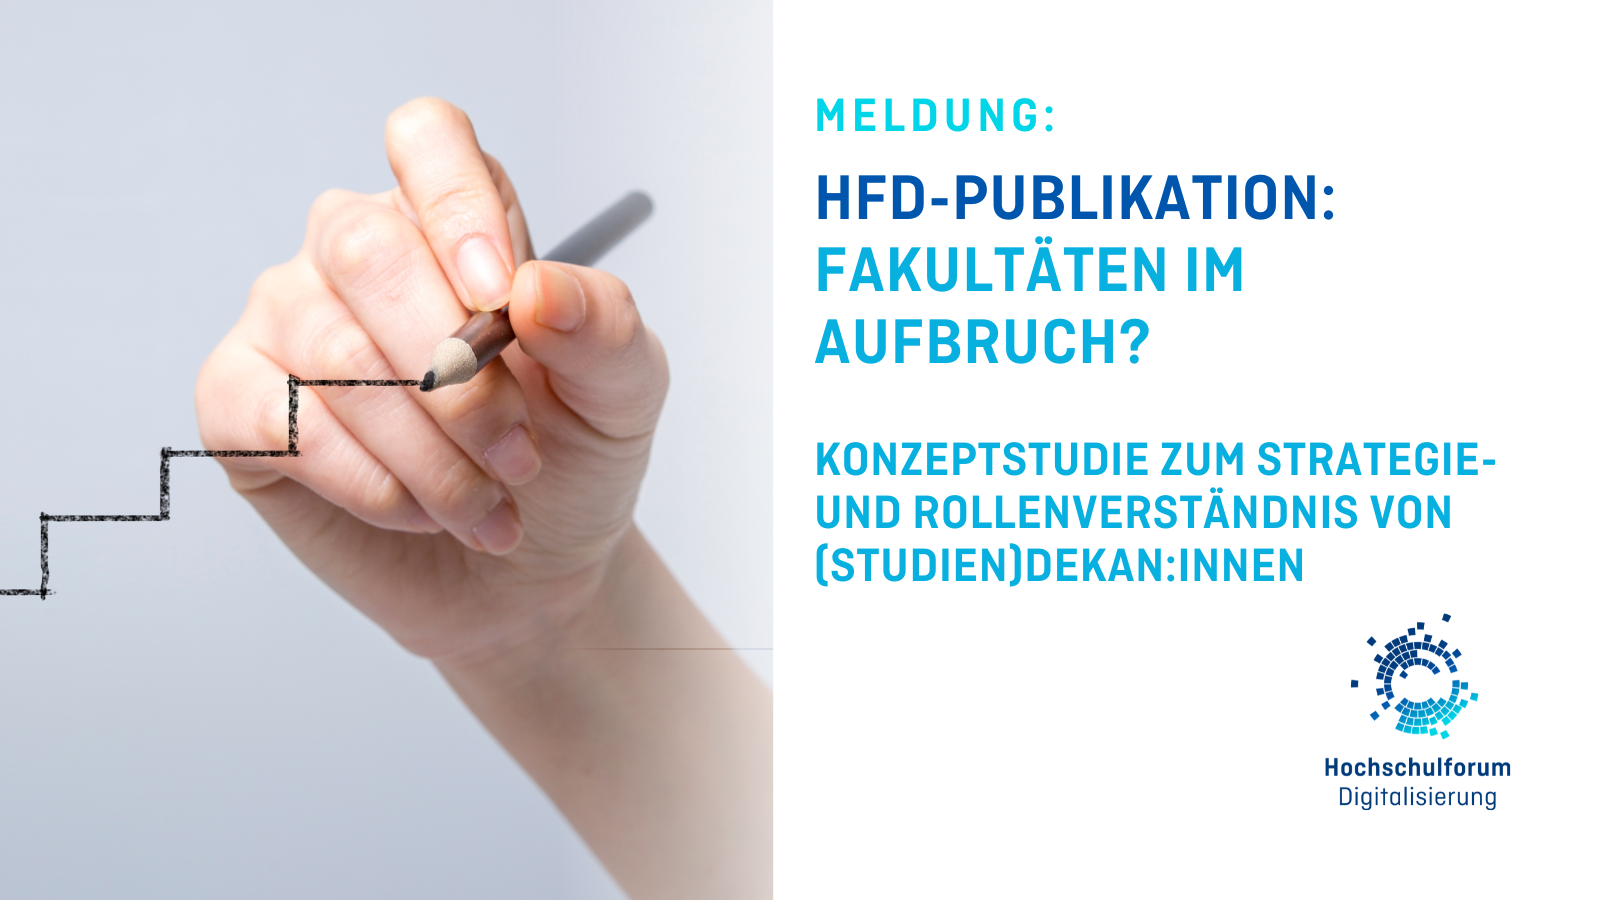 Titelbild zur Meldung: "NEUE HFD-PUBLIKATION: FAKULTÄTEN IM AUFBRUCH? Links auf dem Foto ist eine Hand zu sehen, die eine Treppe zeichnet. Logo rechts unten: Hochschulforum Digitalisierung